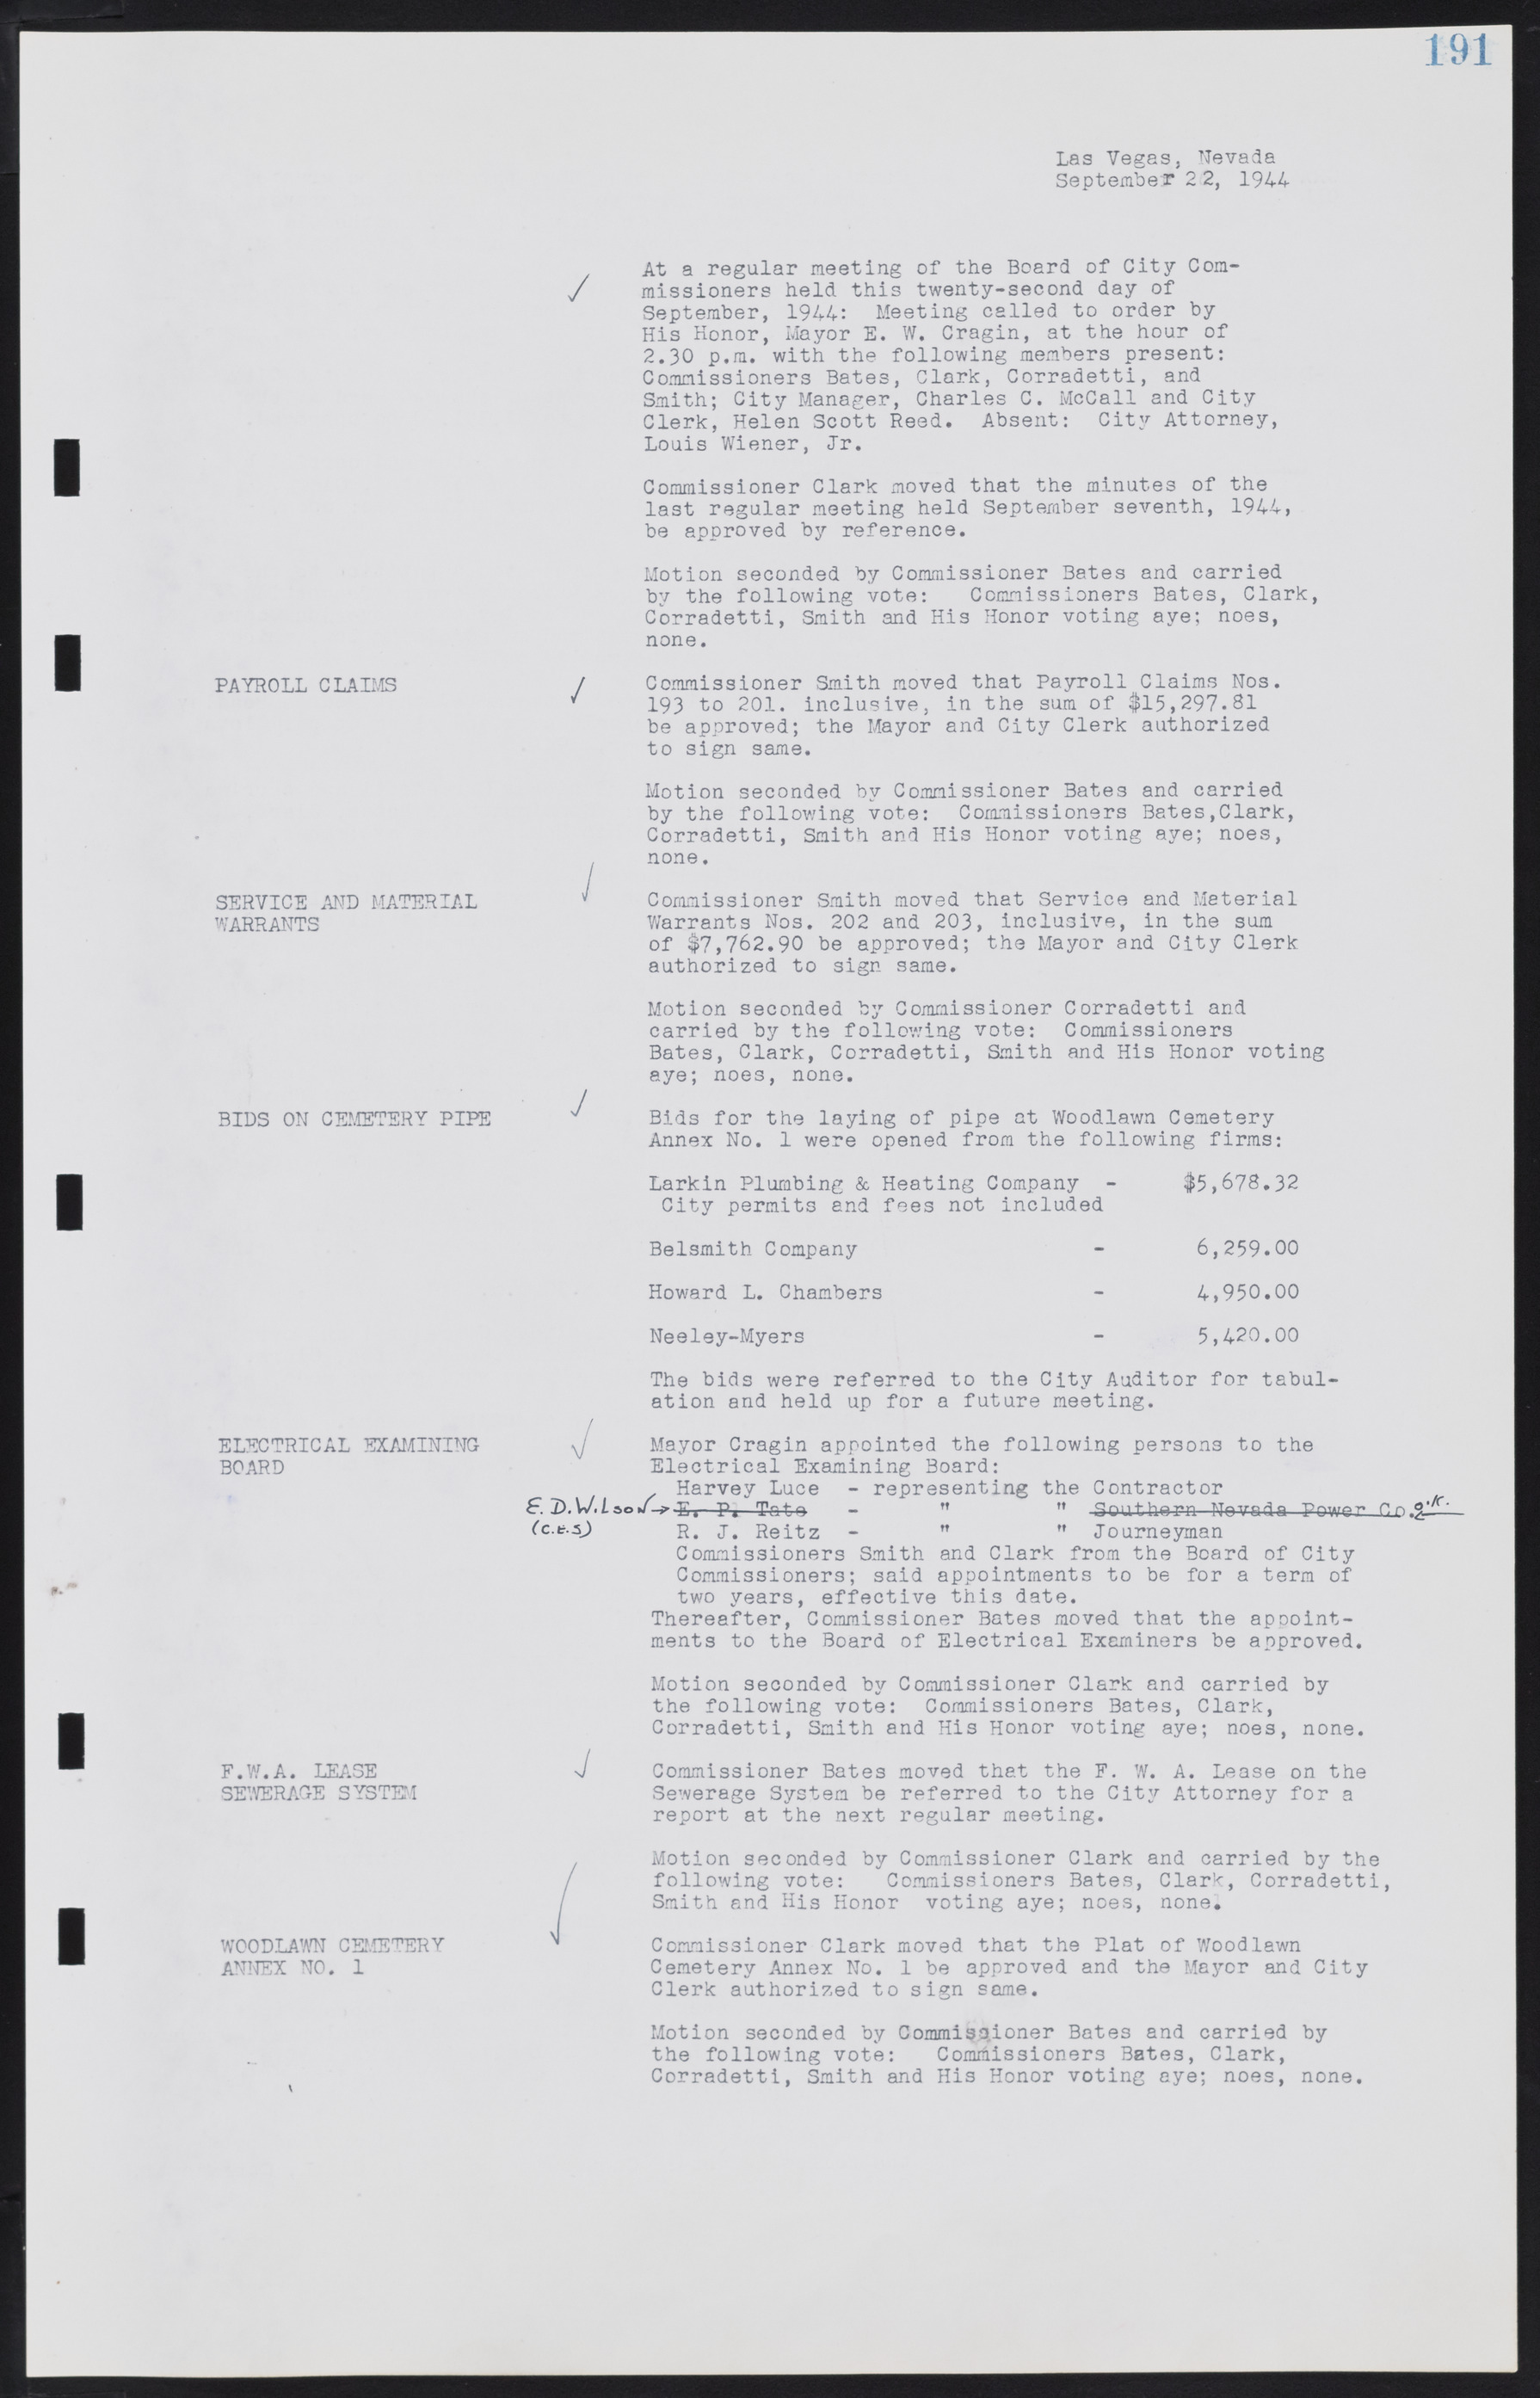 Las Vegas City Commission Minutes, August 11, 1942 to December 30, 1946, lvc000005-210